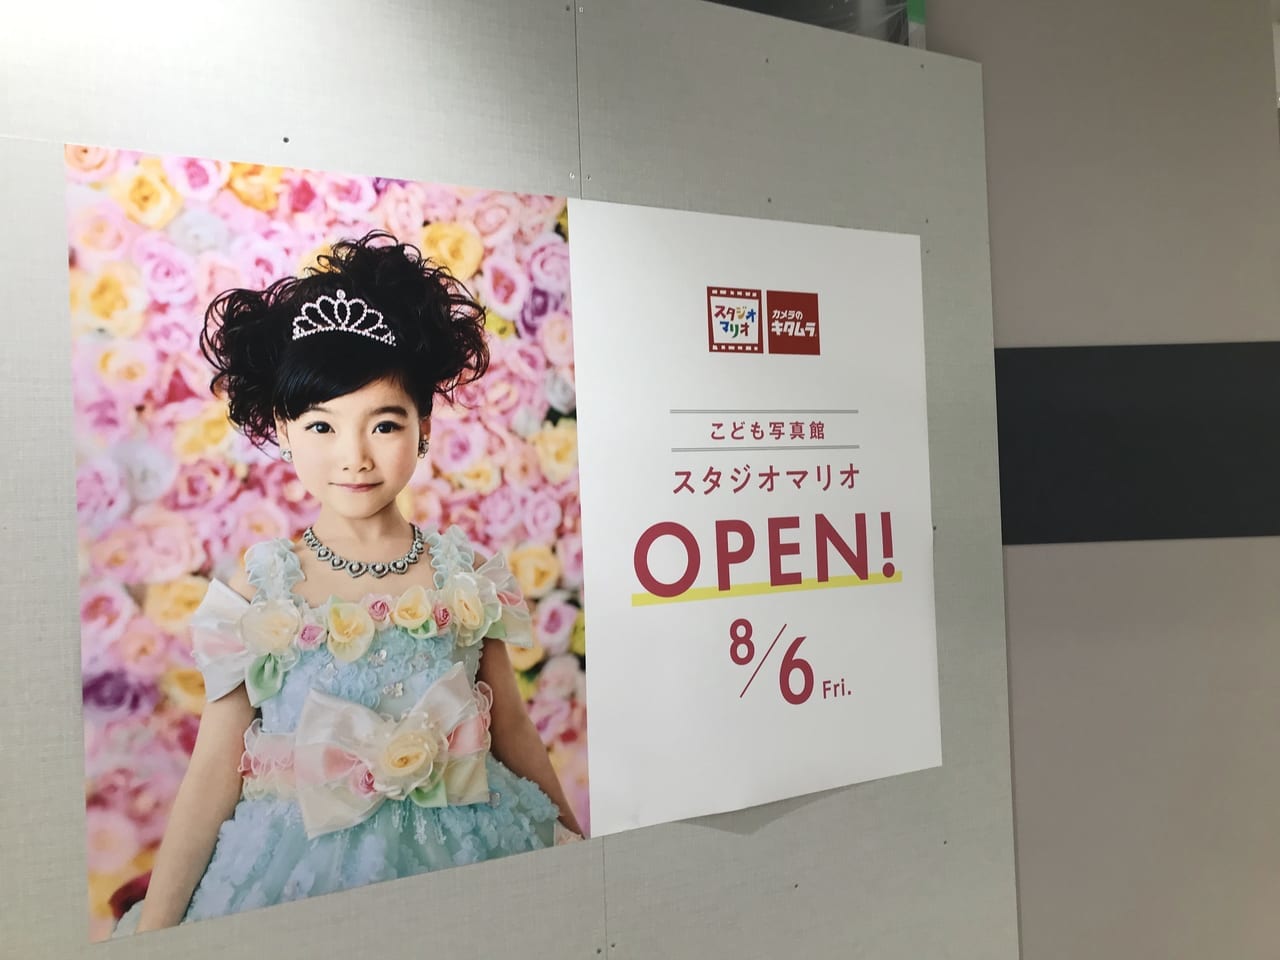 世田谷区スタジオマリオ西友三軒茶屋店が2021年8月6日にオープンします。